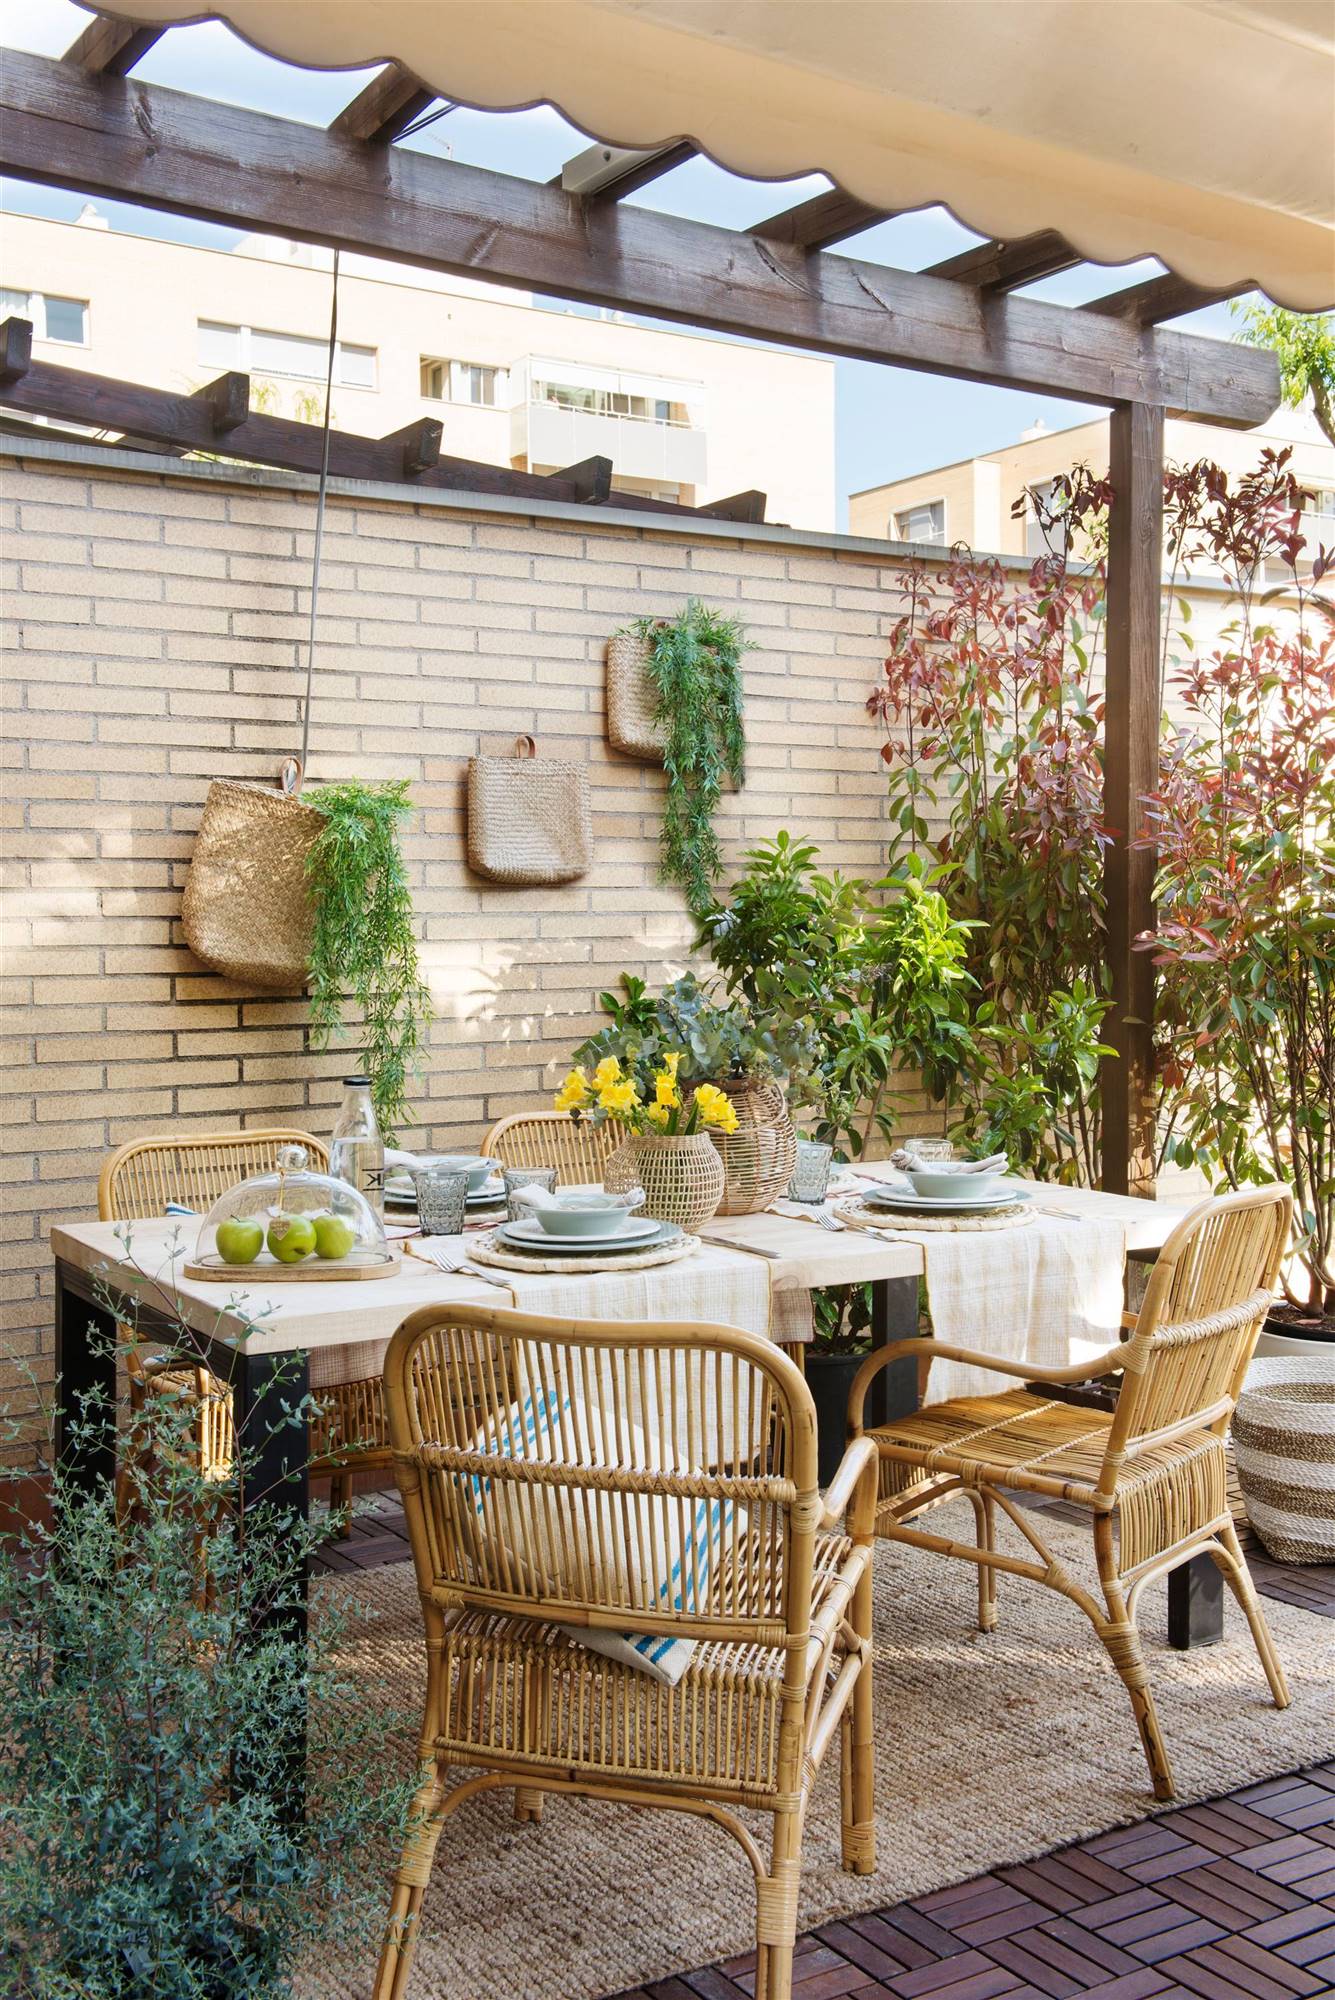 Inconcebible Influyente compromiso 24 ideas de decoración de patios pequeños para disfrutarlos a tope